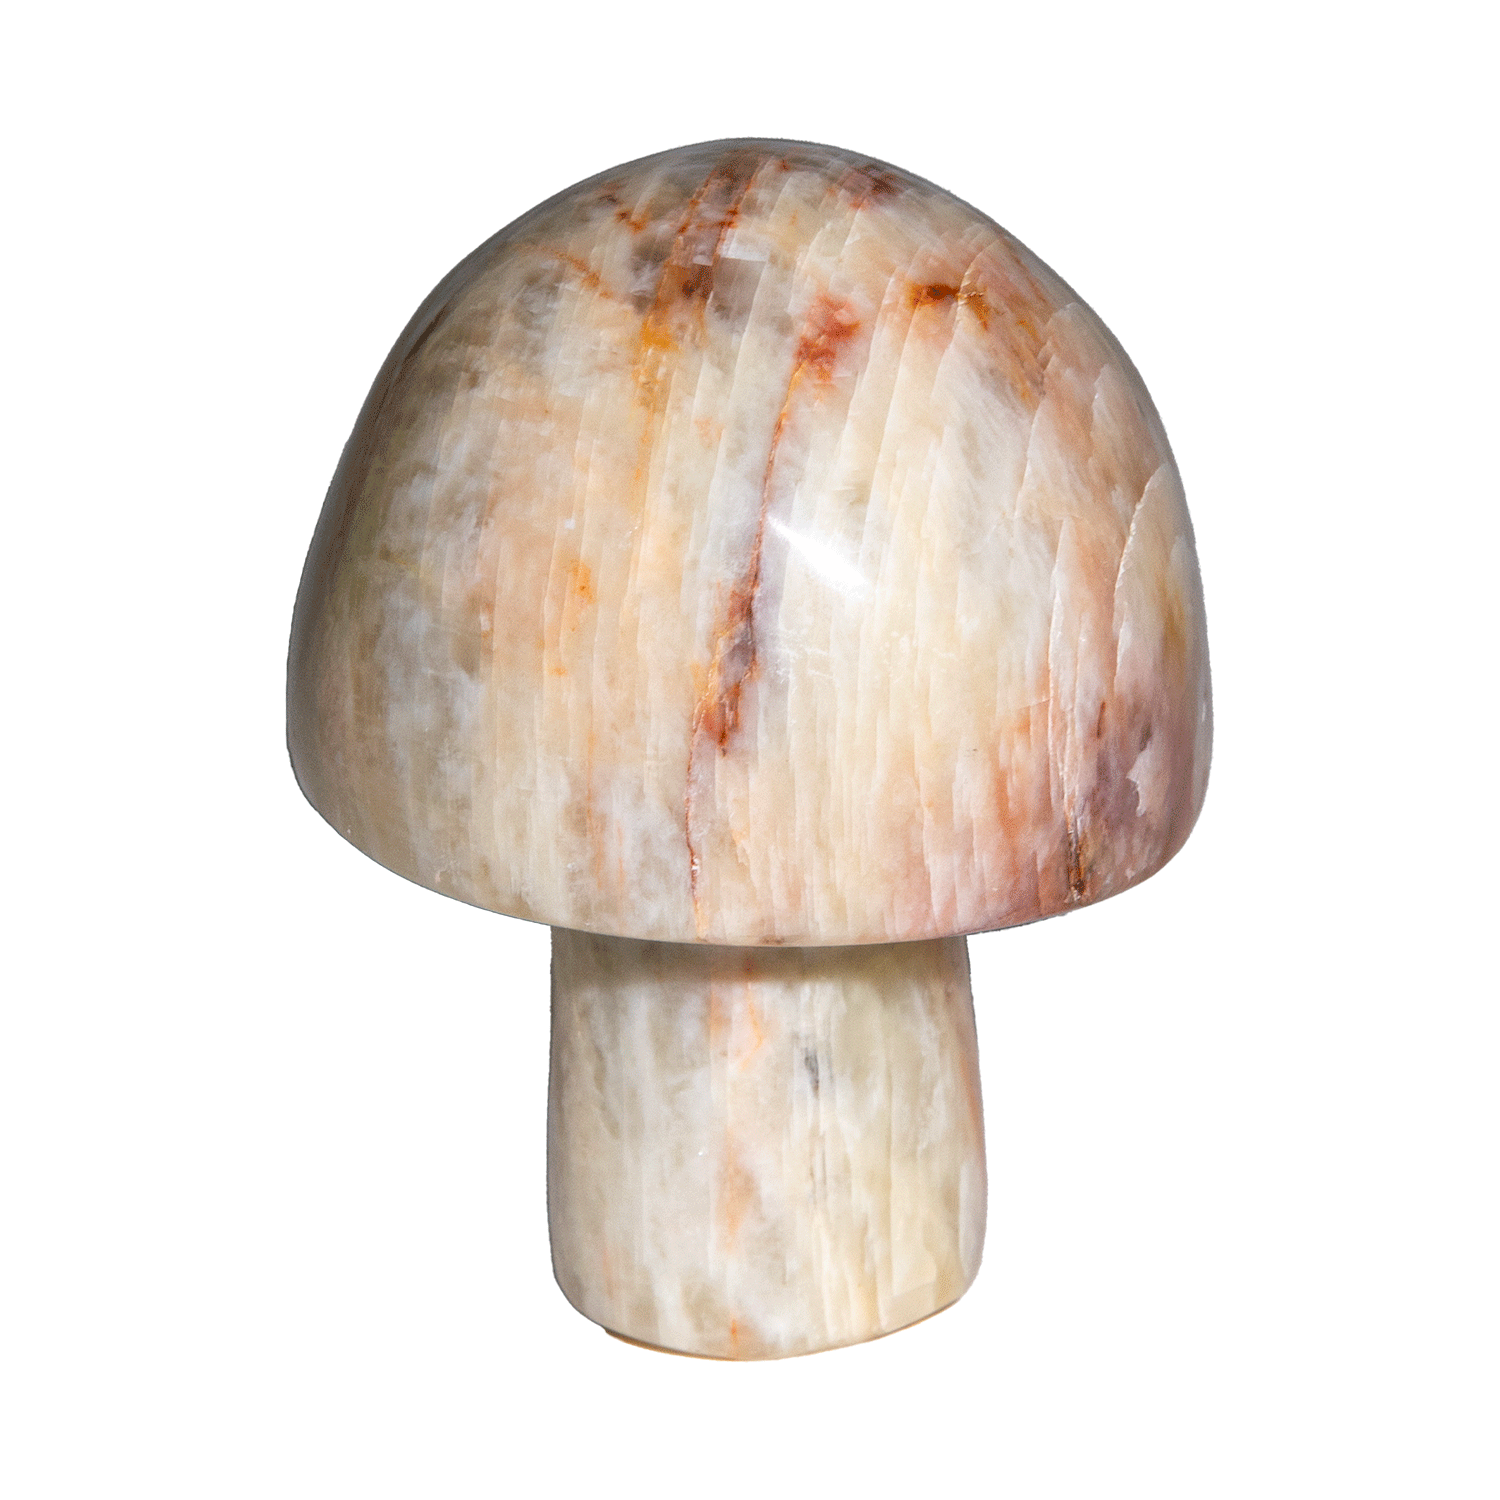 Moonstone Mushroom | Shop Moonstone at Energy Muse